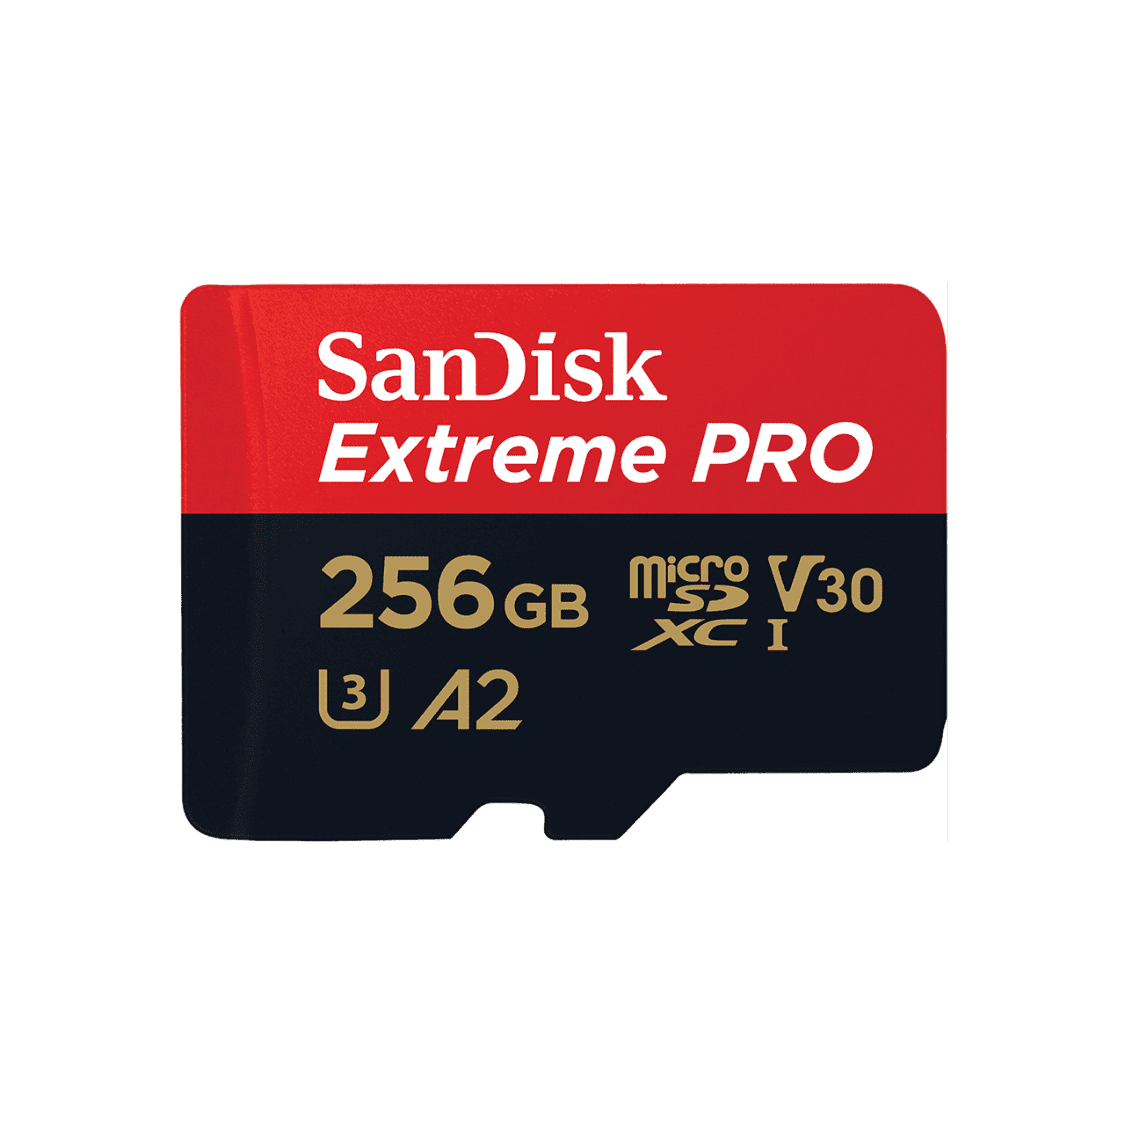 SanDisk Extreme Pro microSDXC™ Card UHS-I 256GB